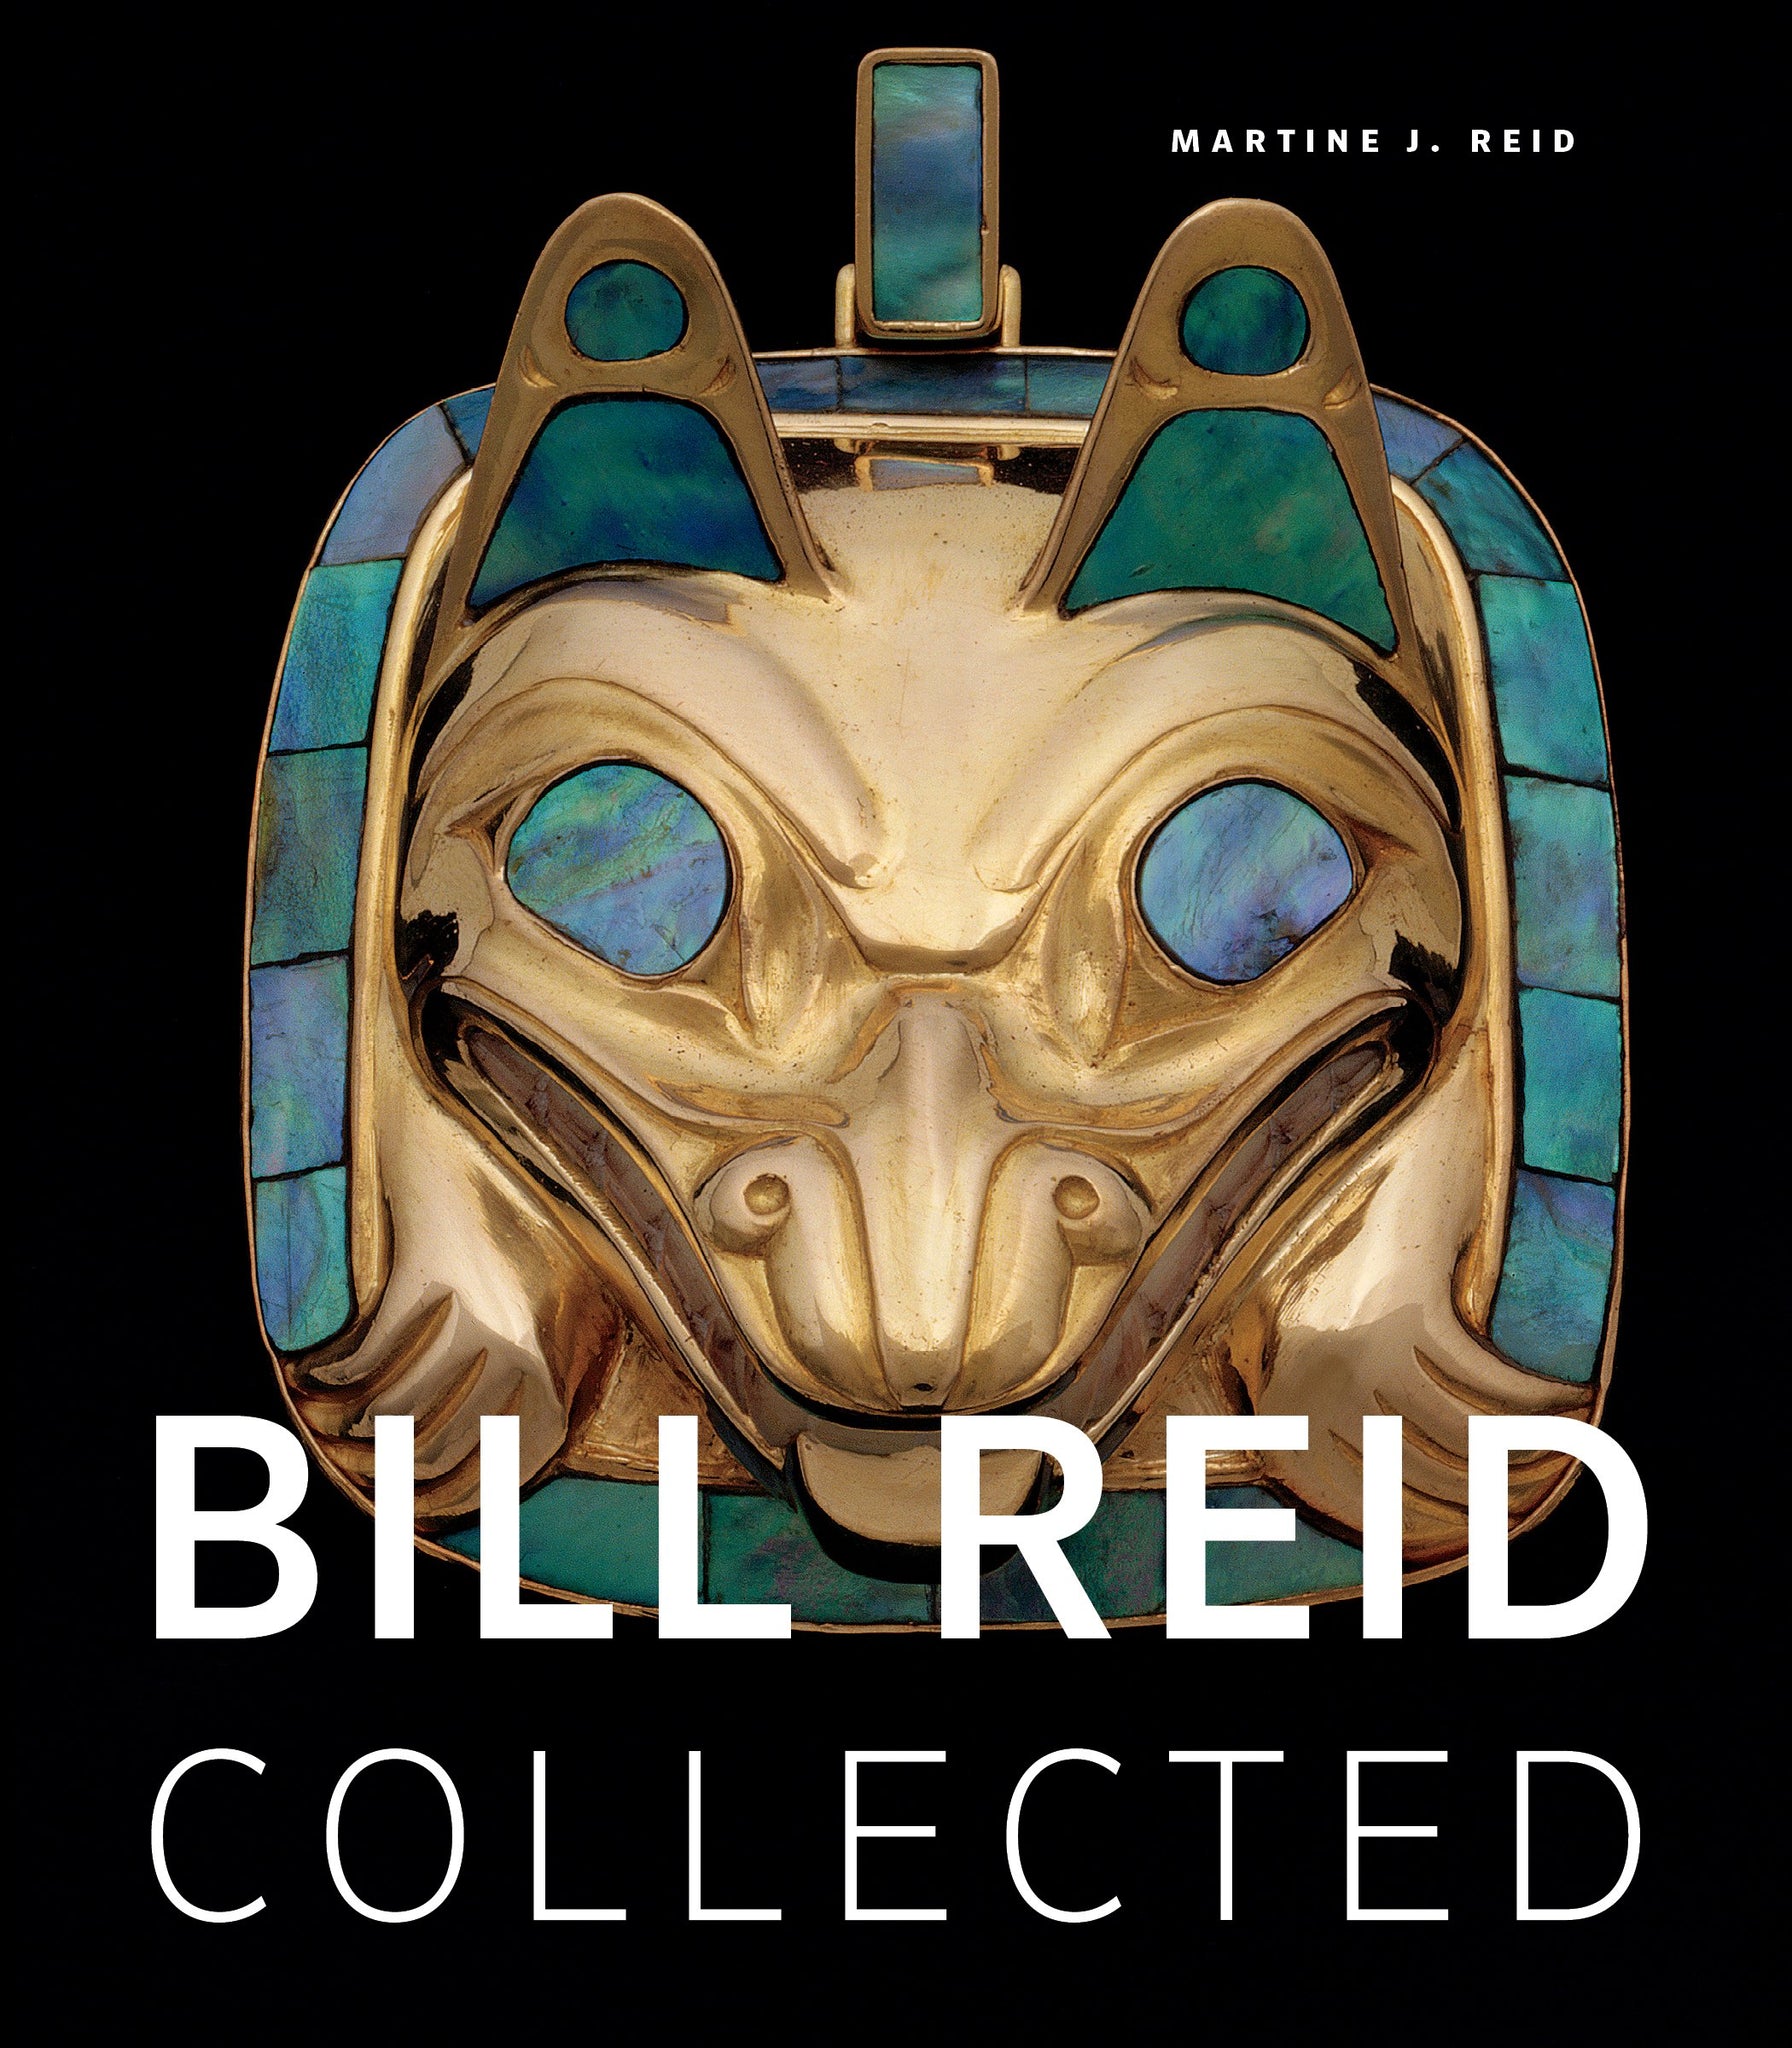 Bill Reid Collected